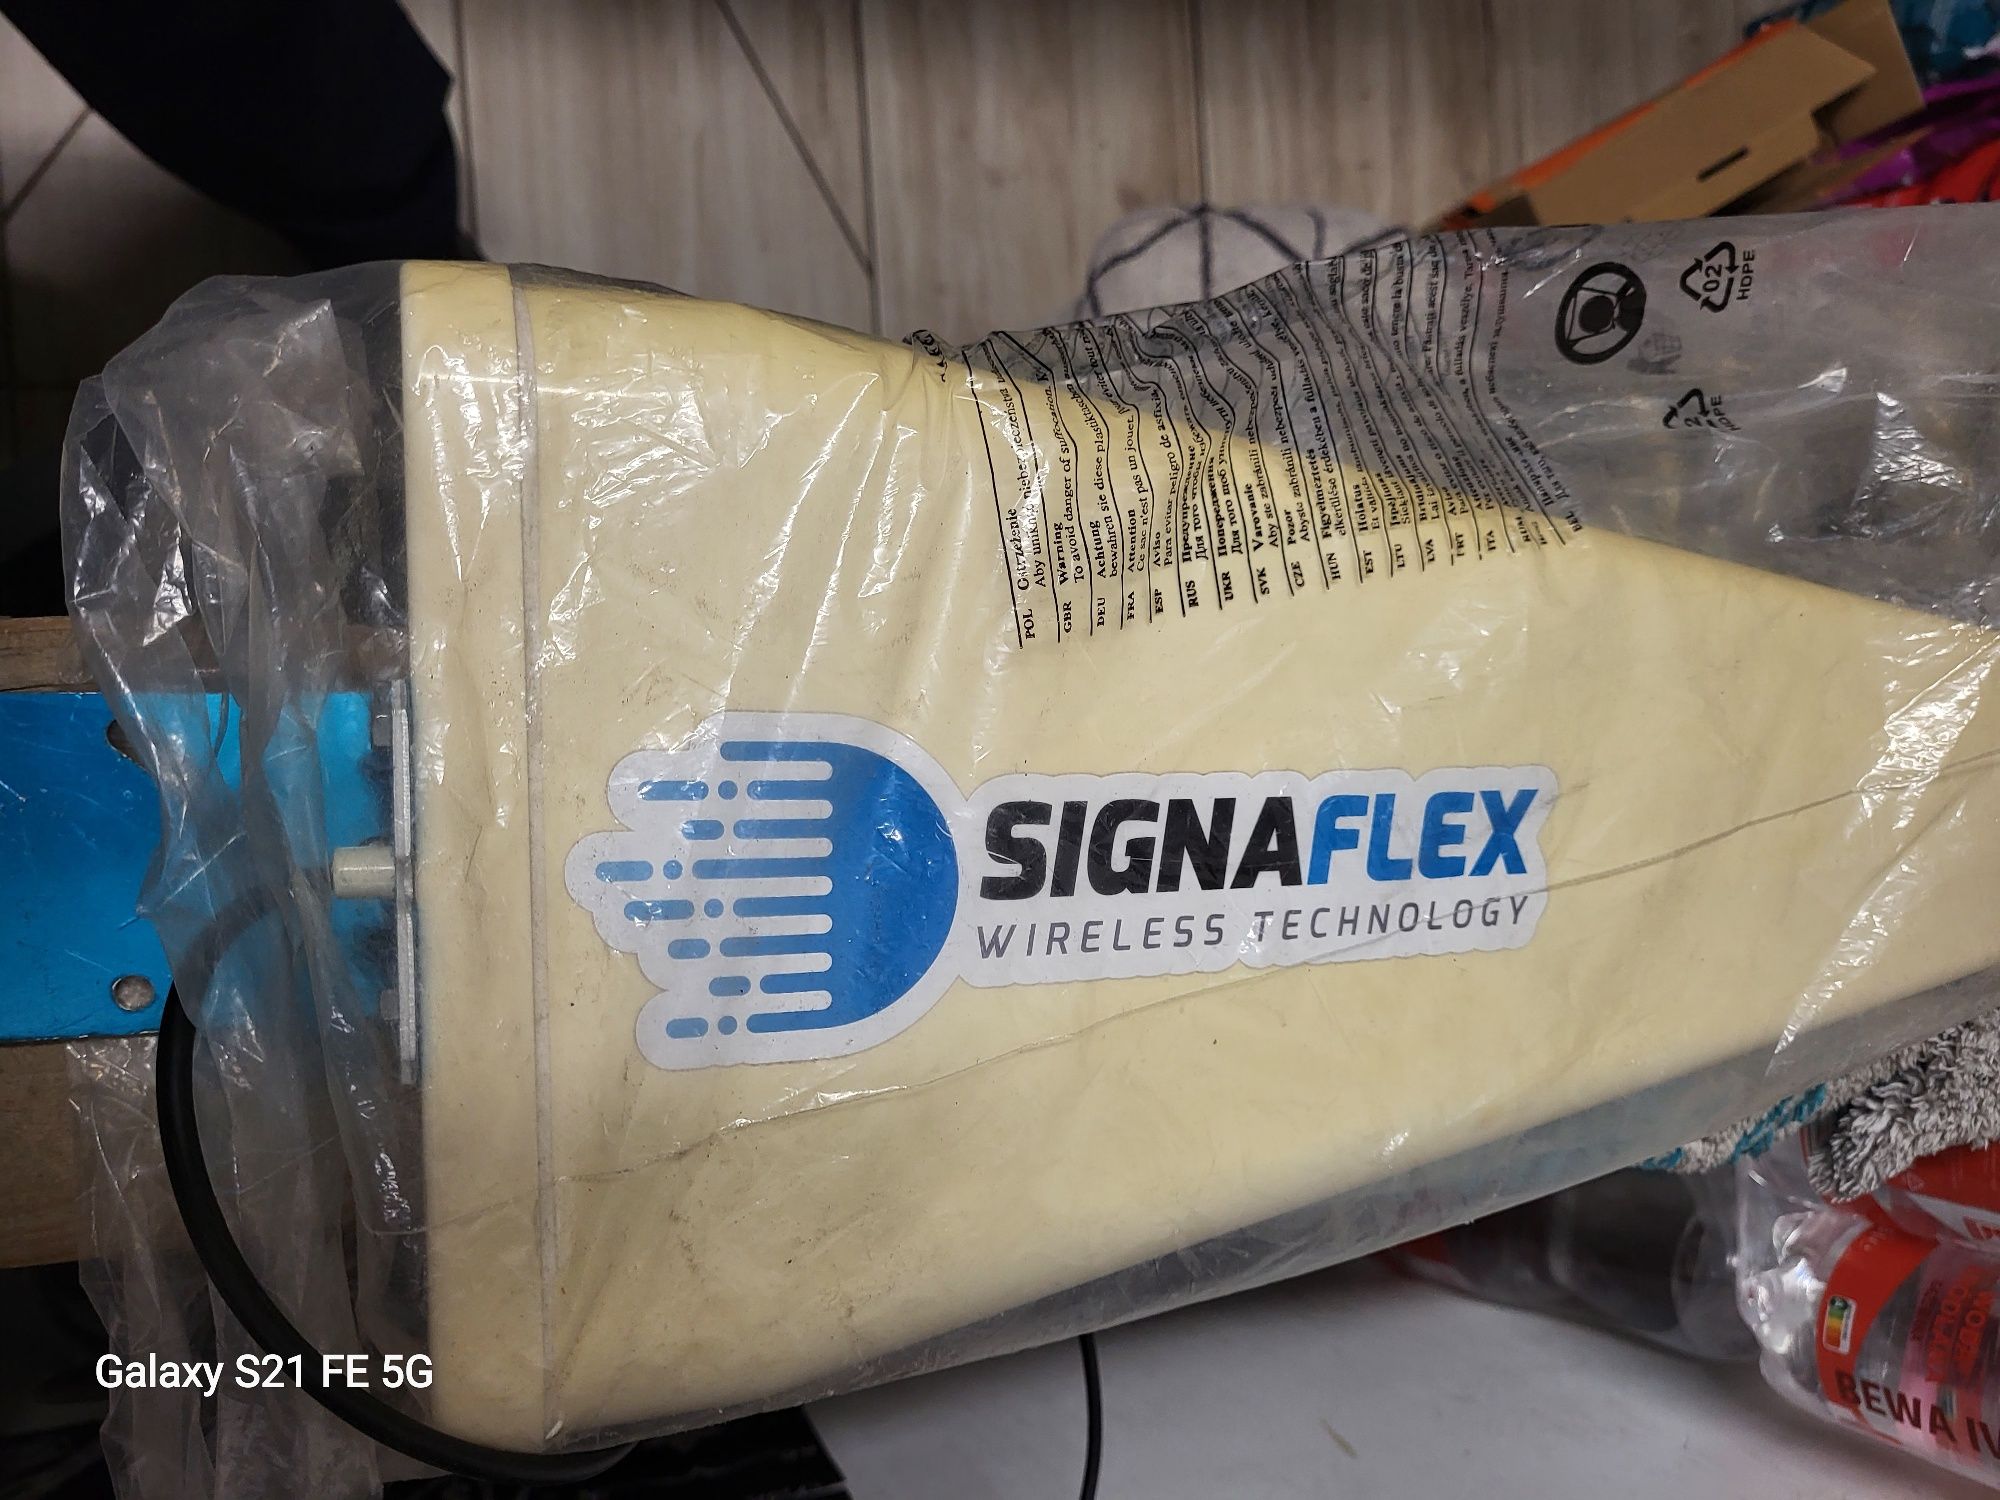 Signaflex 20db plus przewód 10m